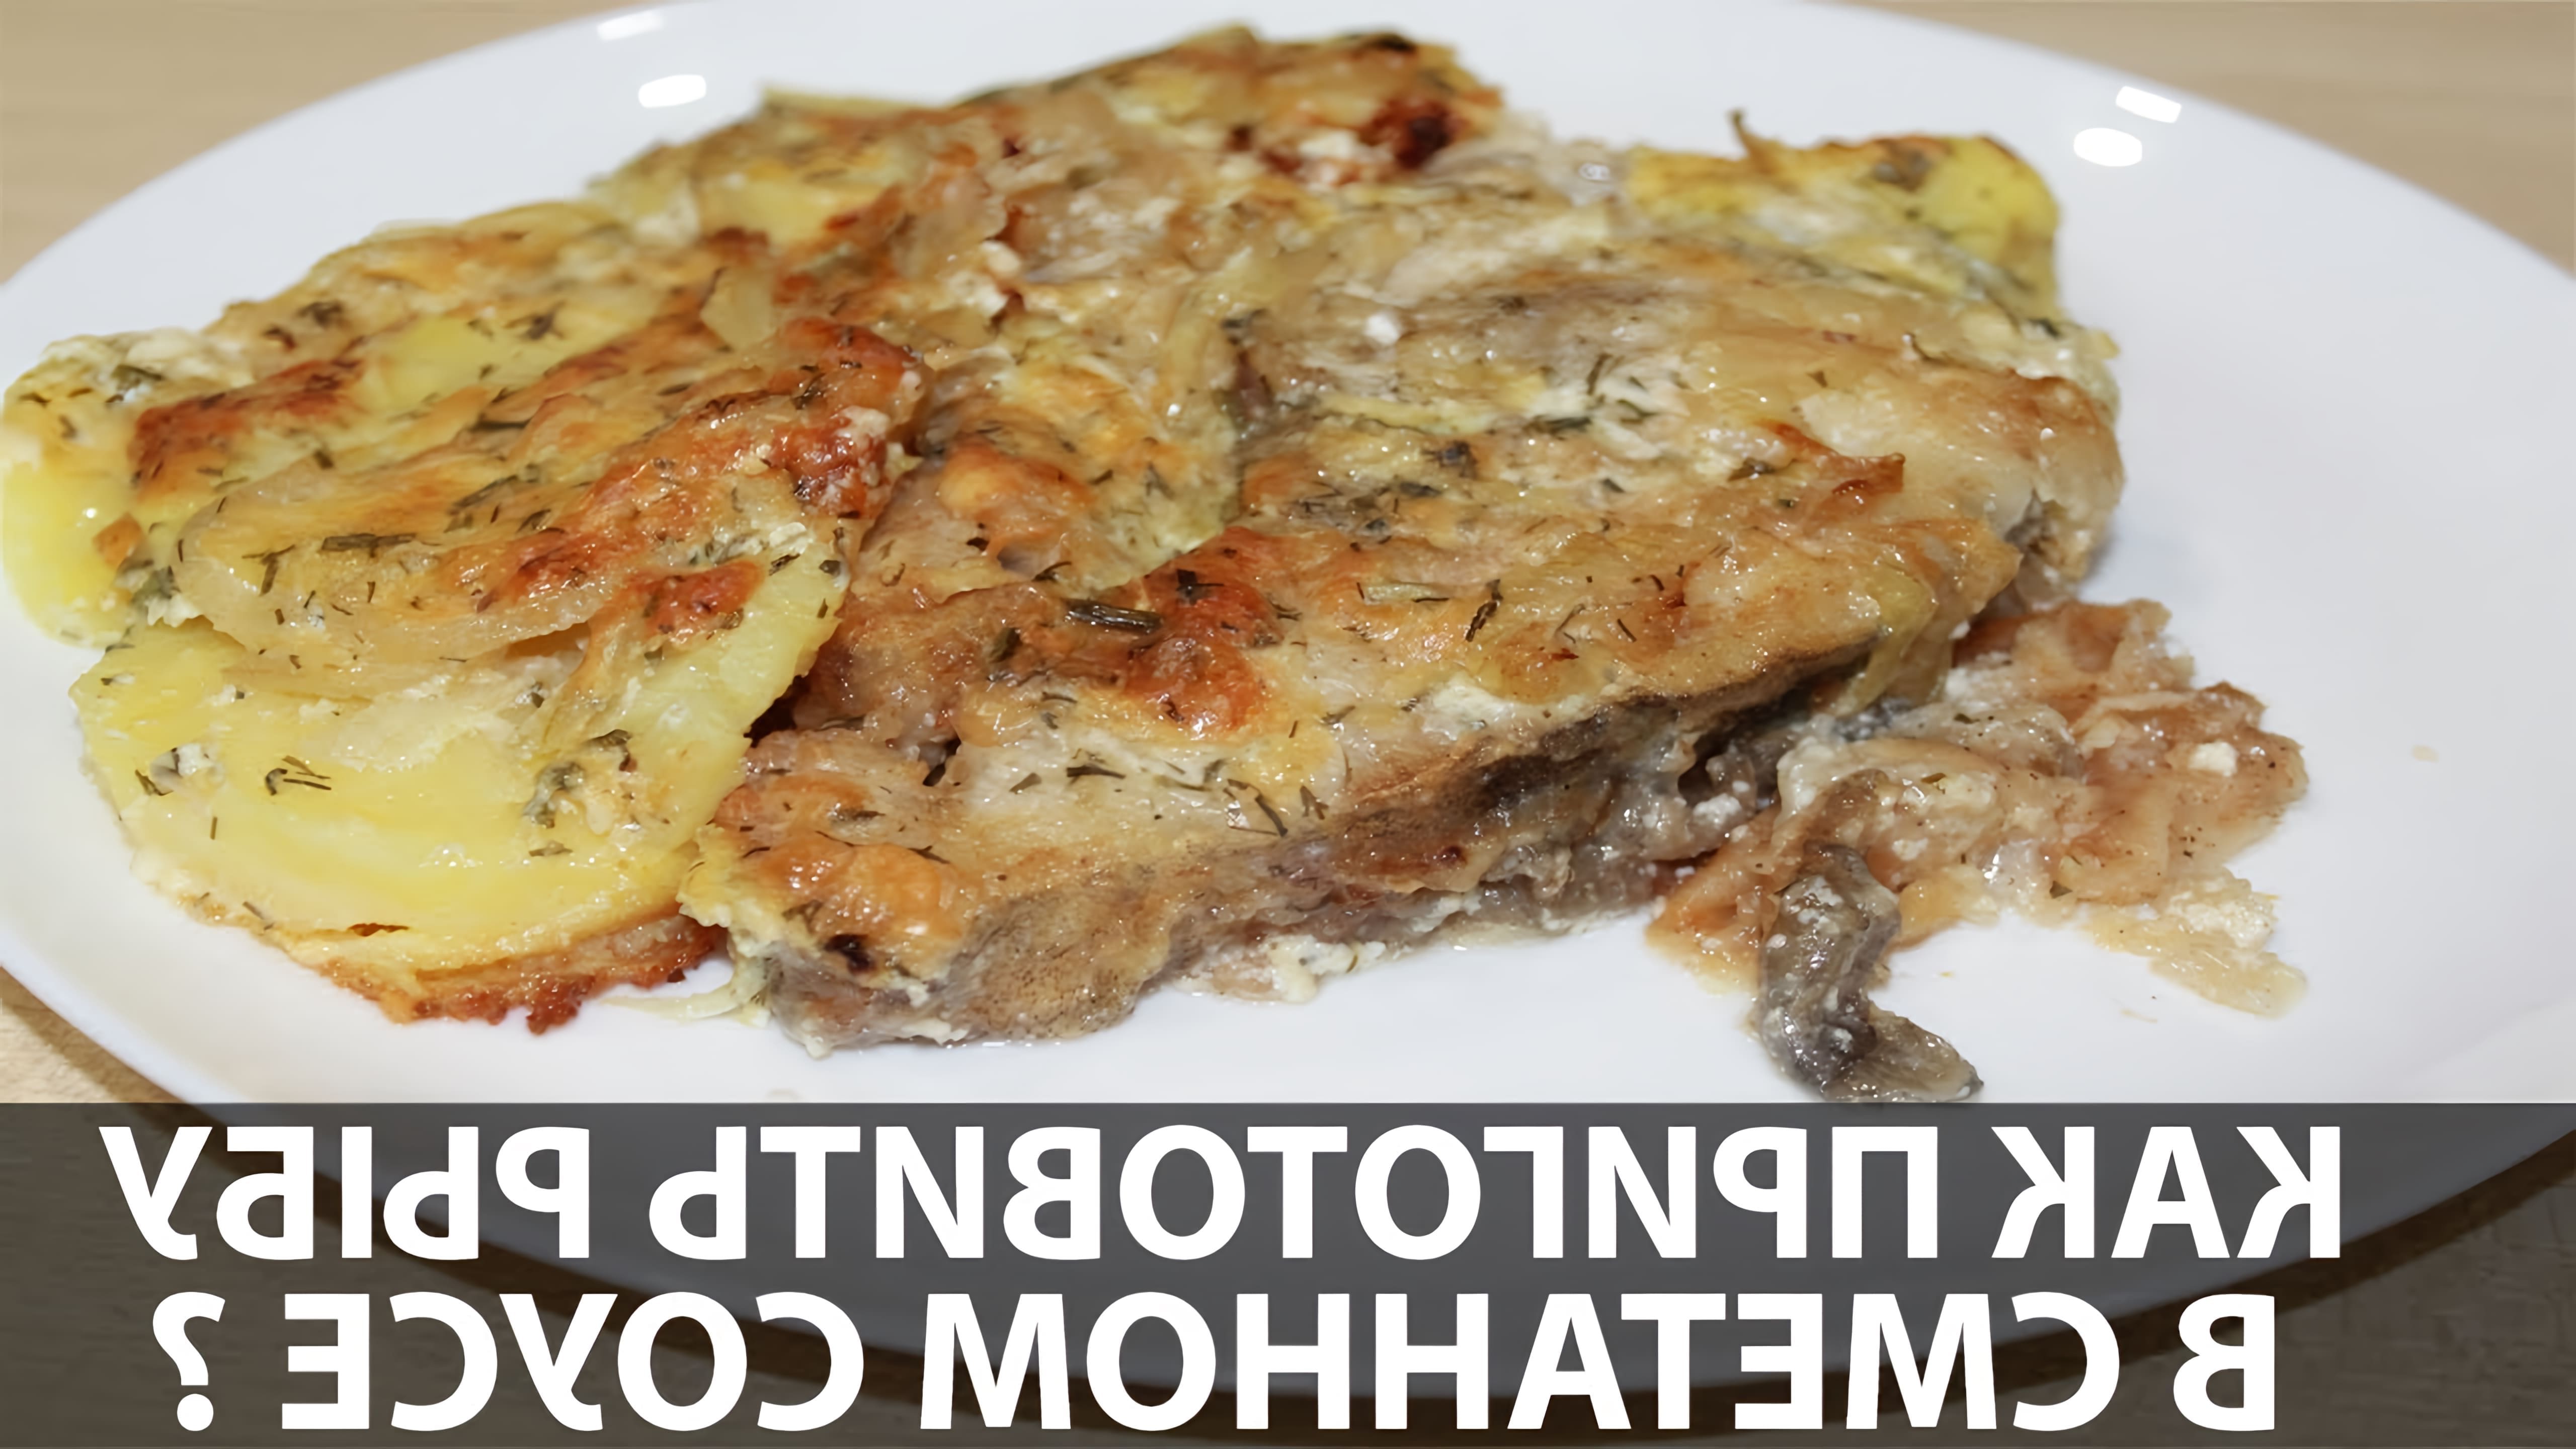 В этом видео-ролике будет показан рецепт приготовления вкусной рыбы, запеченной в духовке с сыром и сметаной